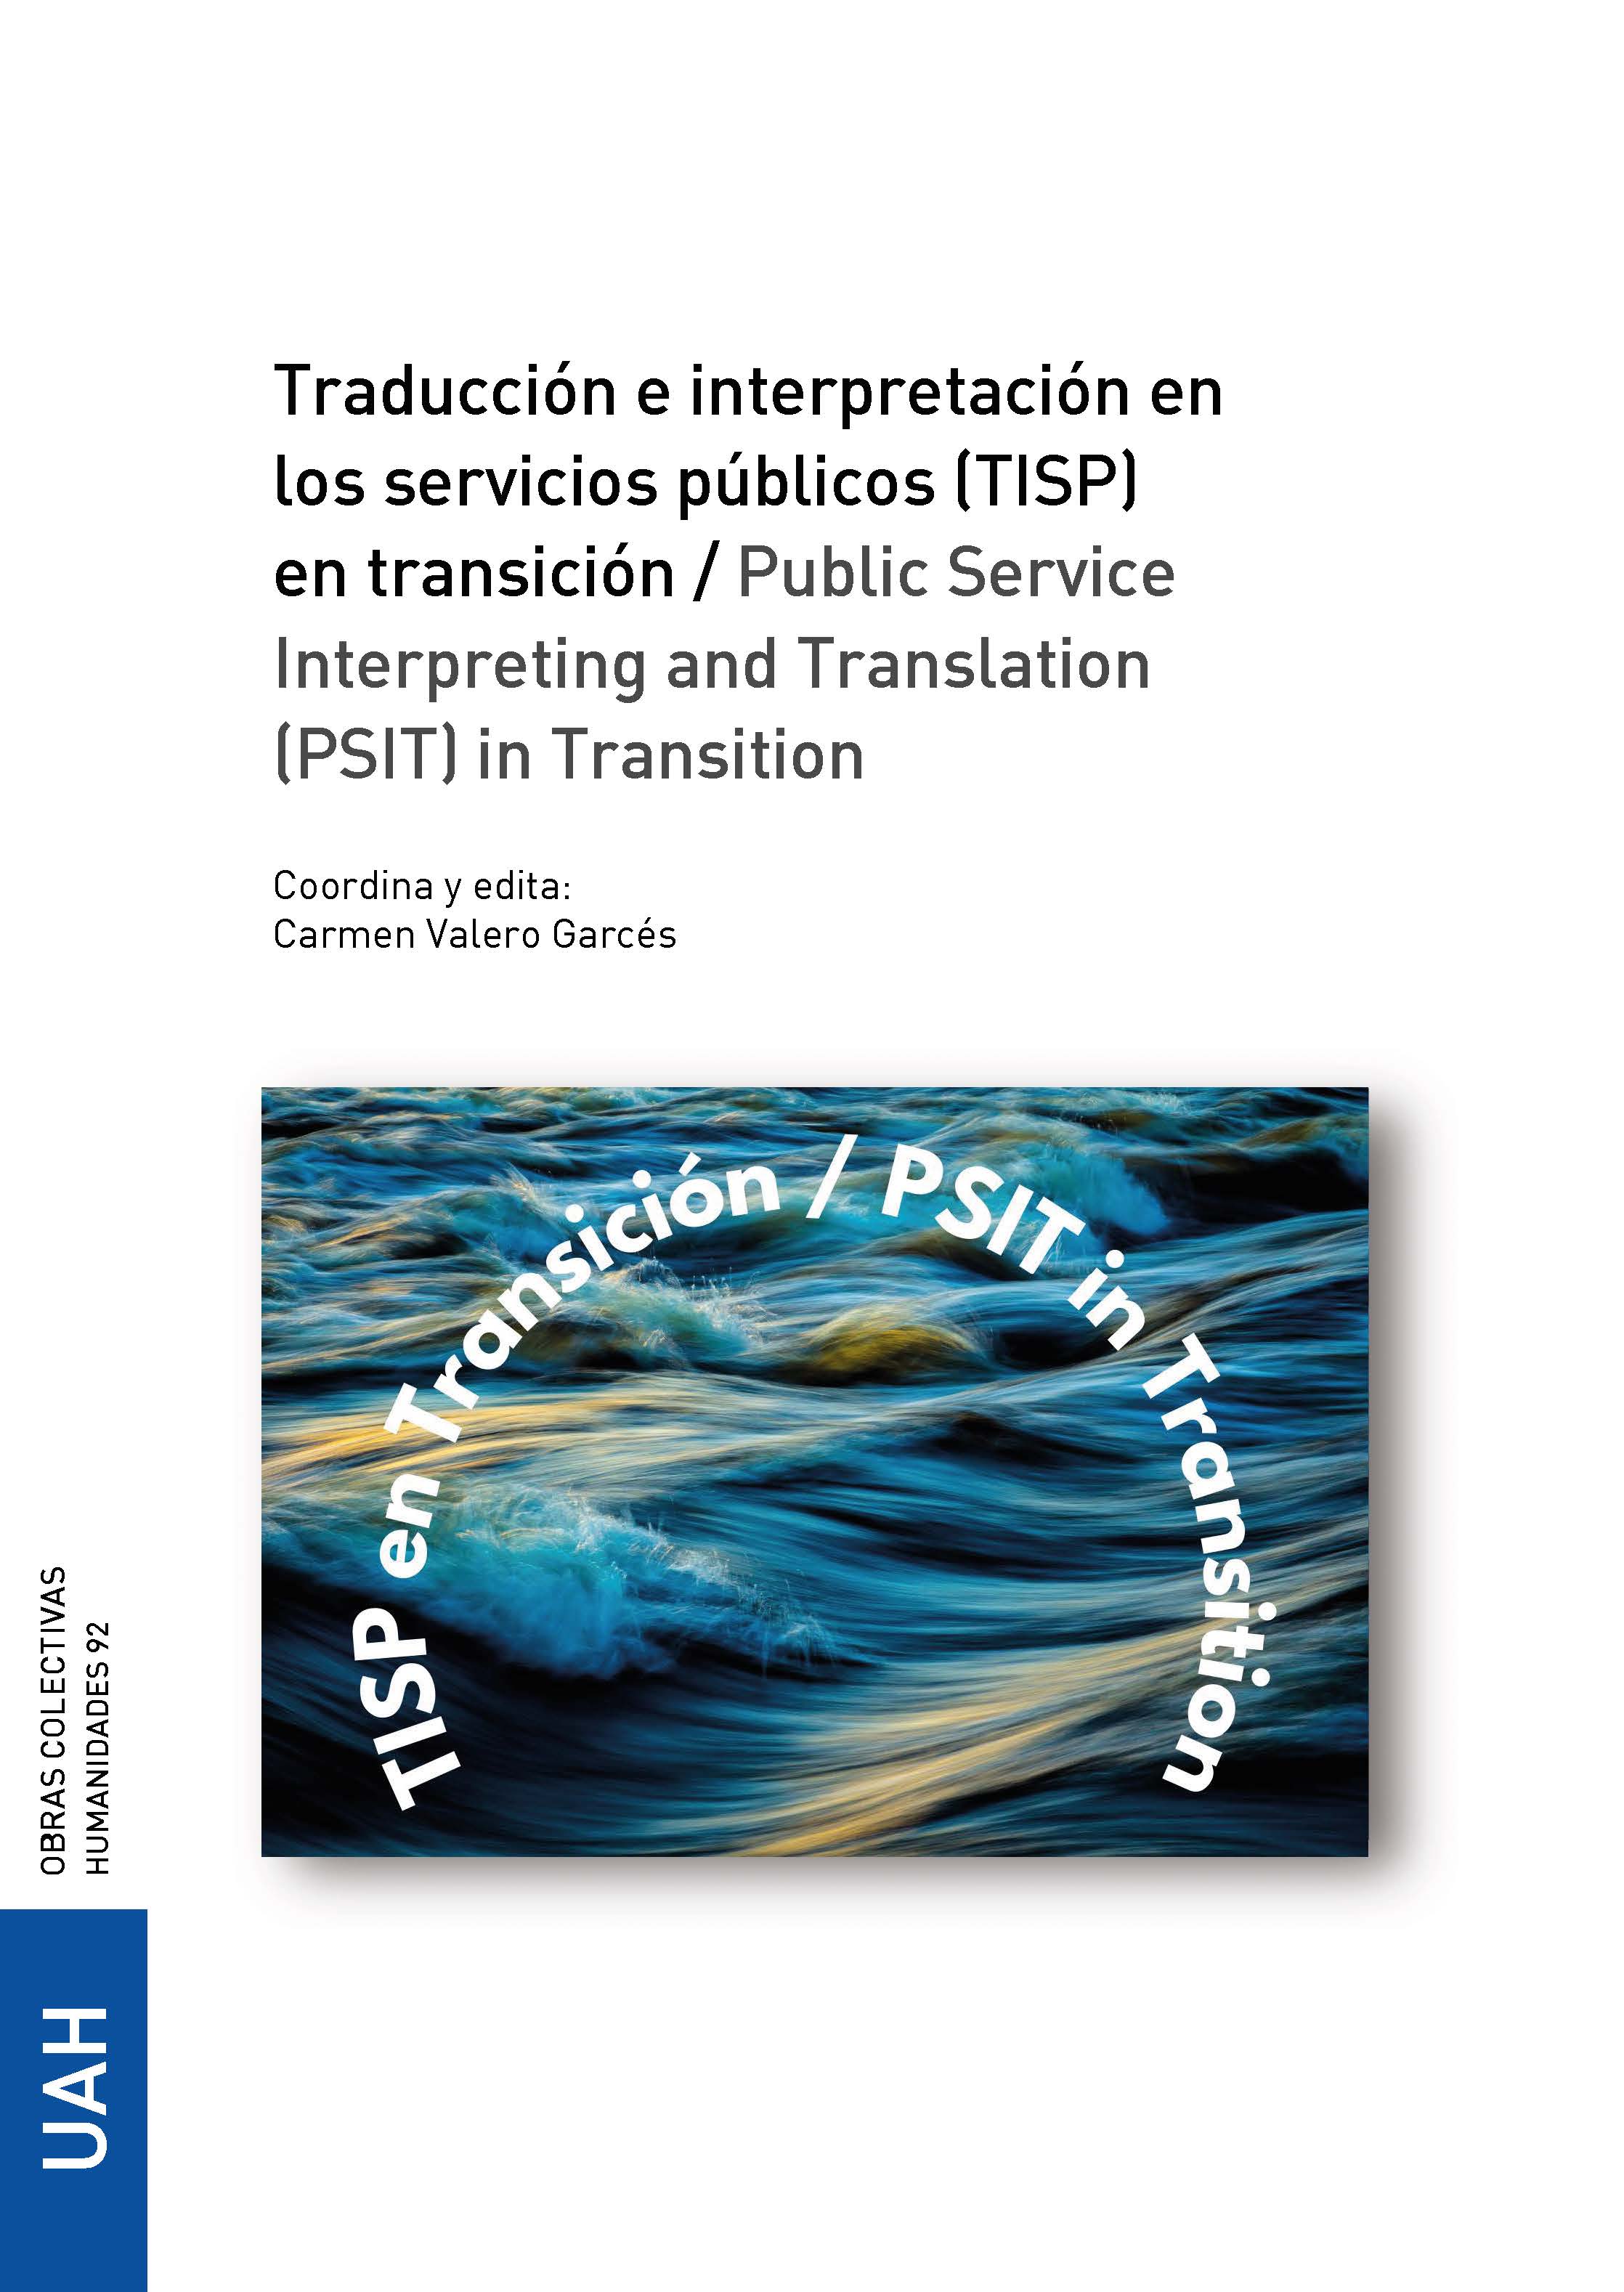 Traducción e interpretación en los servicios públicos (TISP) en transición / Public Service Interpreting and Translation (PSIT) in Transition